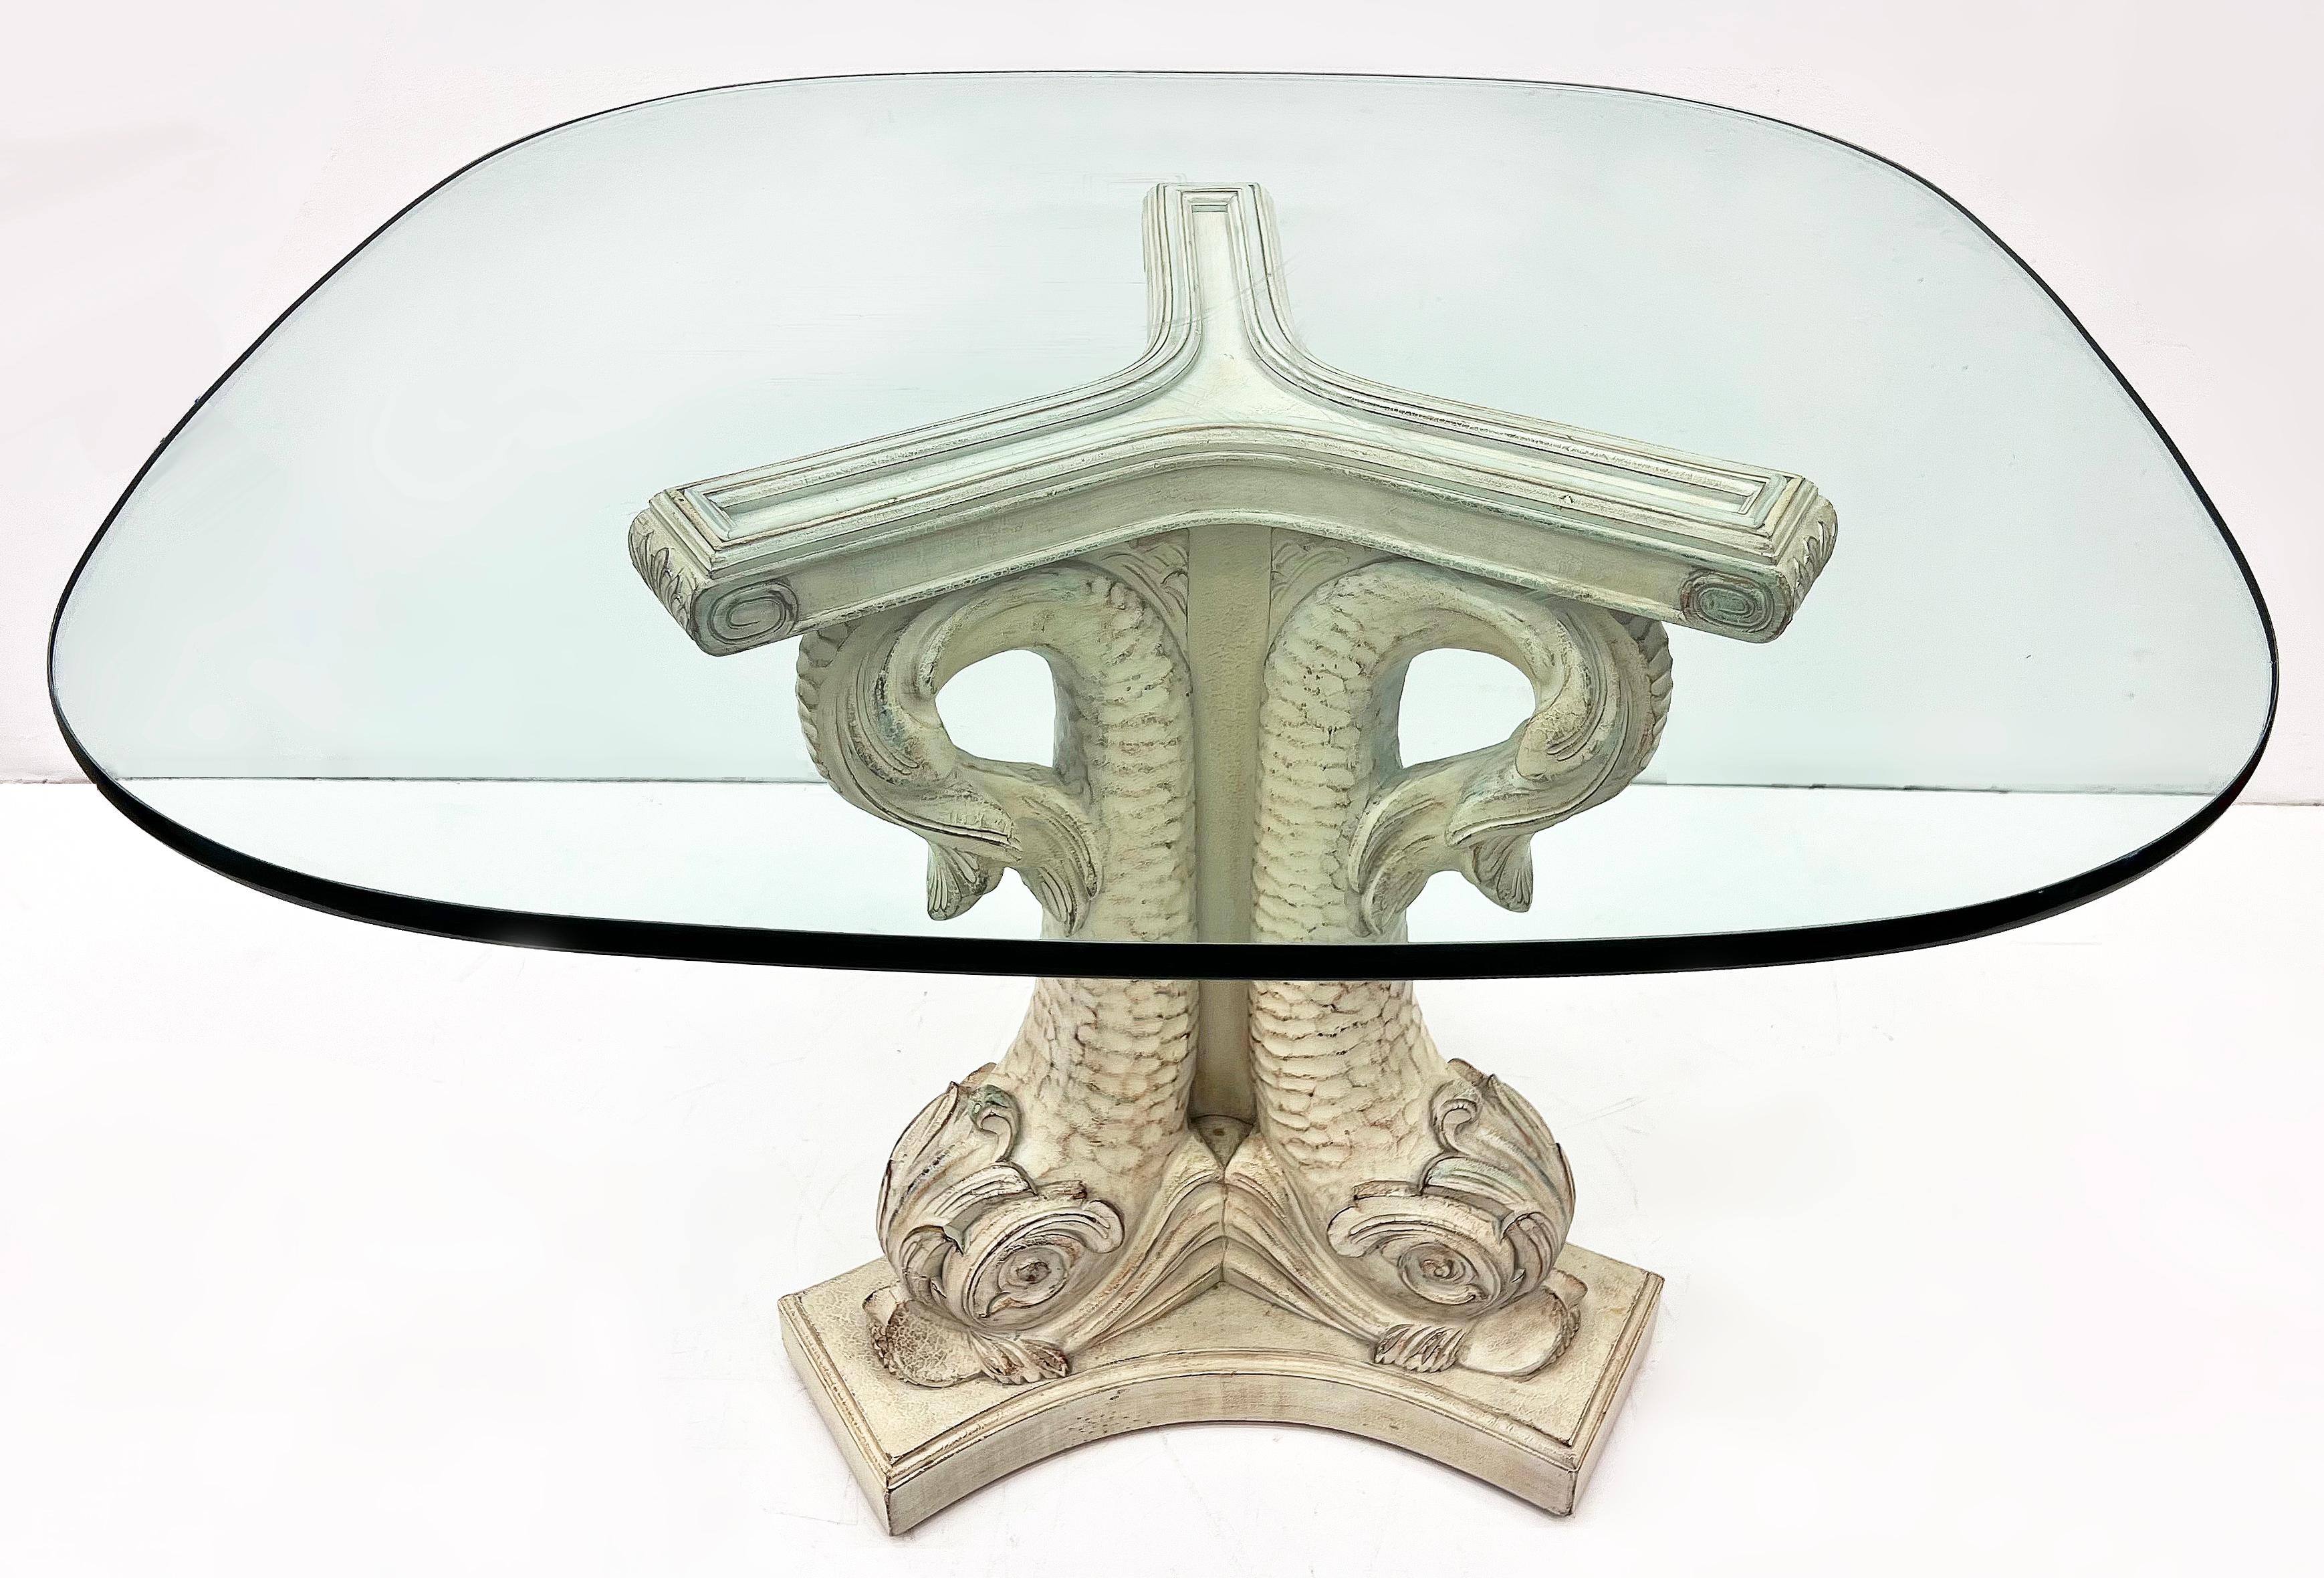 Table guéridon vénitienne en dauphins sculptés de style néoclassique avec plateau en verre

Nous proposons à la vente un guéridon vénitien de style néoclassique en bois sculpté avec dauphins. La table est élégamment sculptée et a été fabriquée en